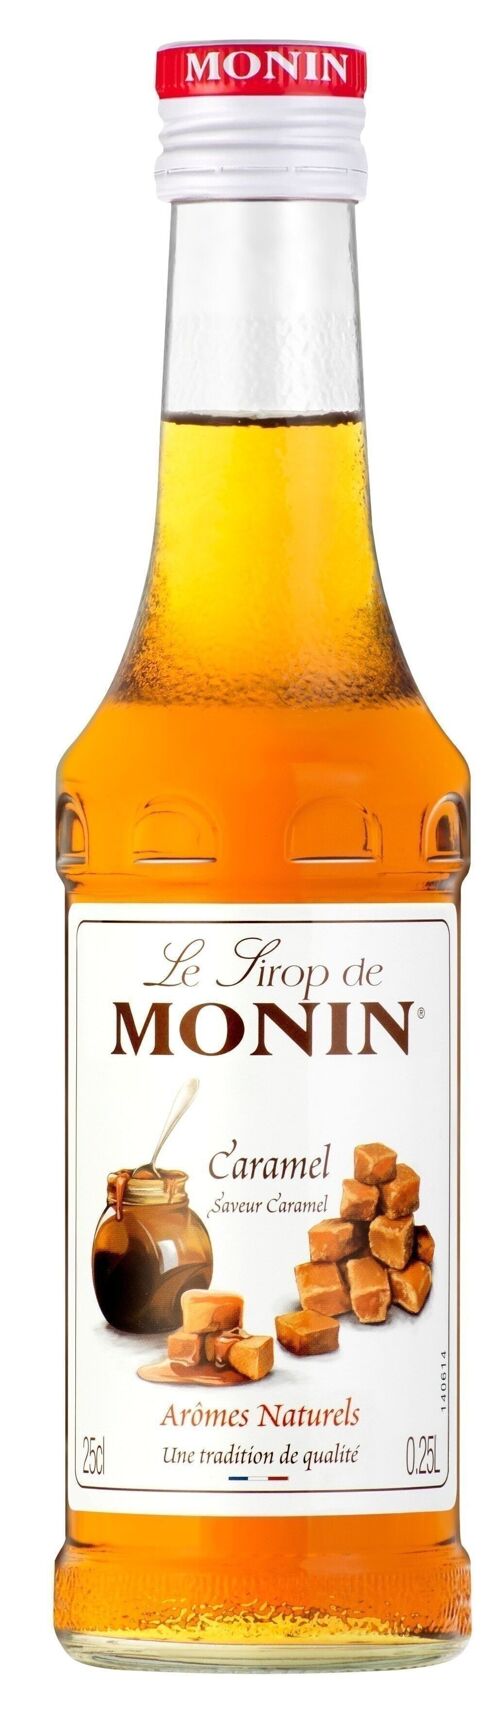 Sirop de Caramel MONIN pour aromatiser vos boissons chaudes ou cocktails - Arômes naturels-  25cl